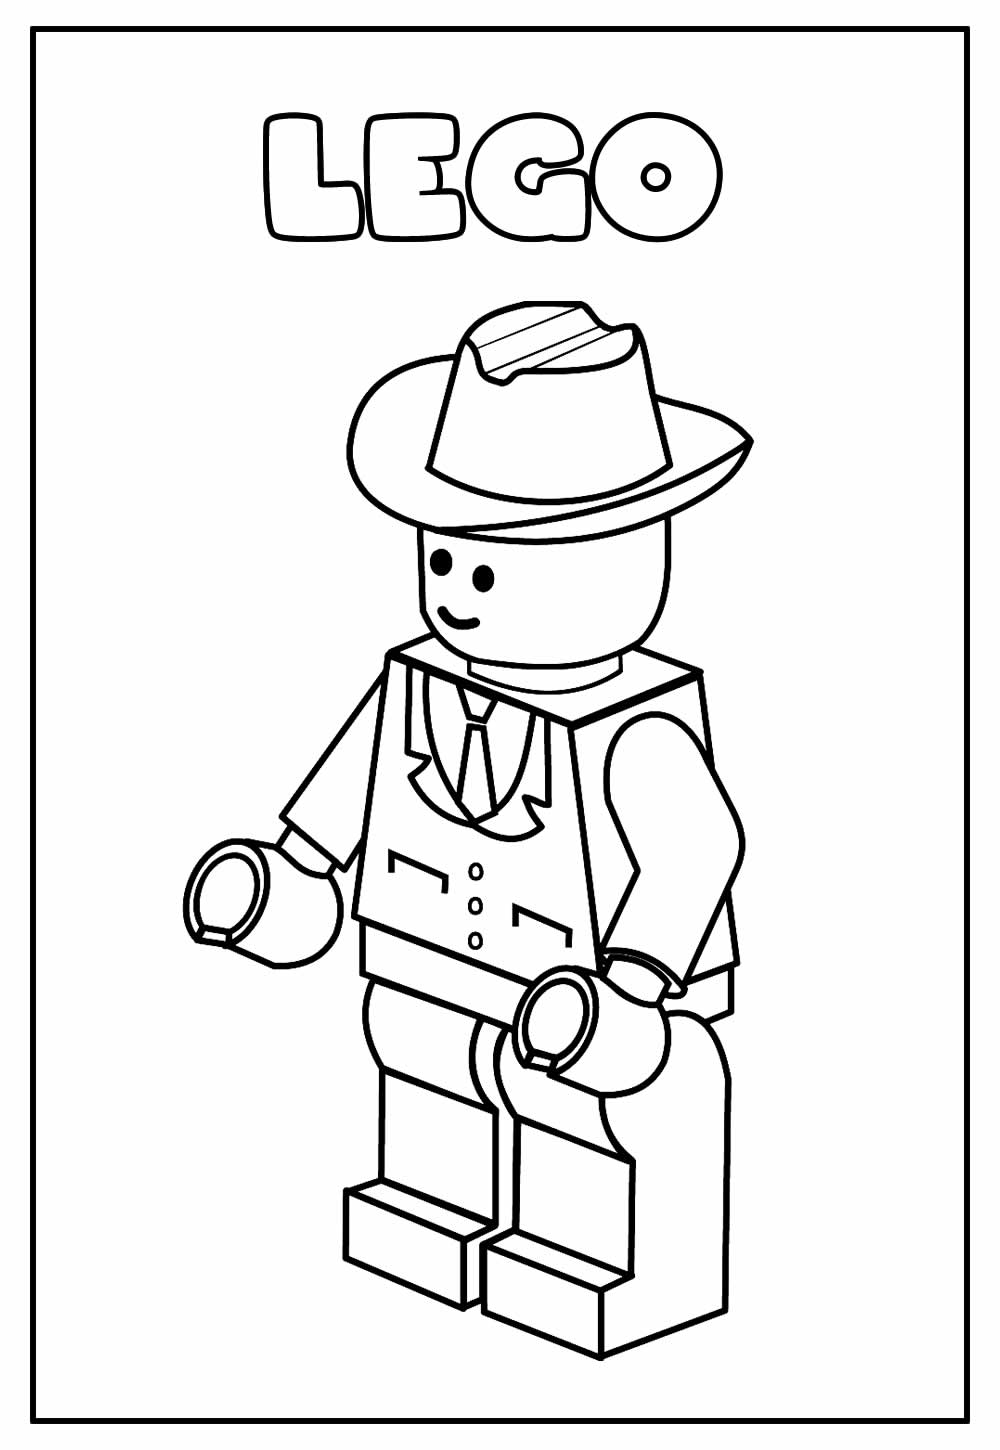 Desenho Educativo de Lego para colorir